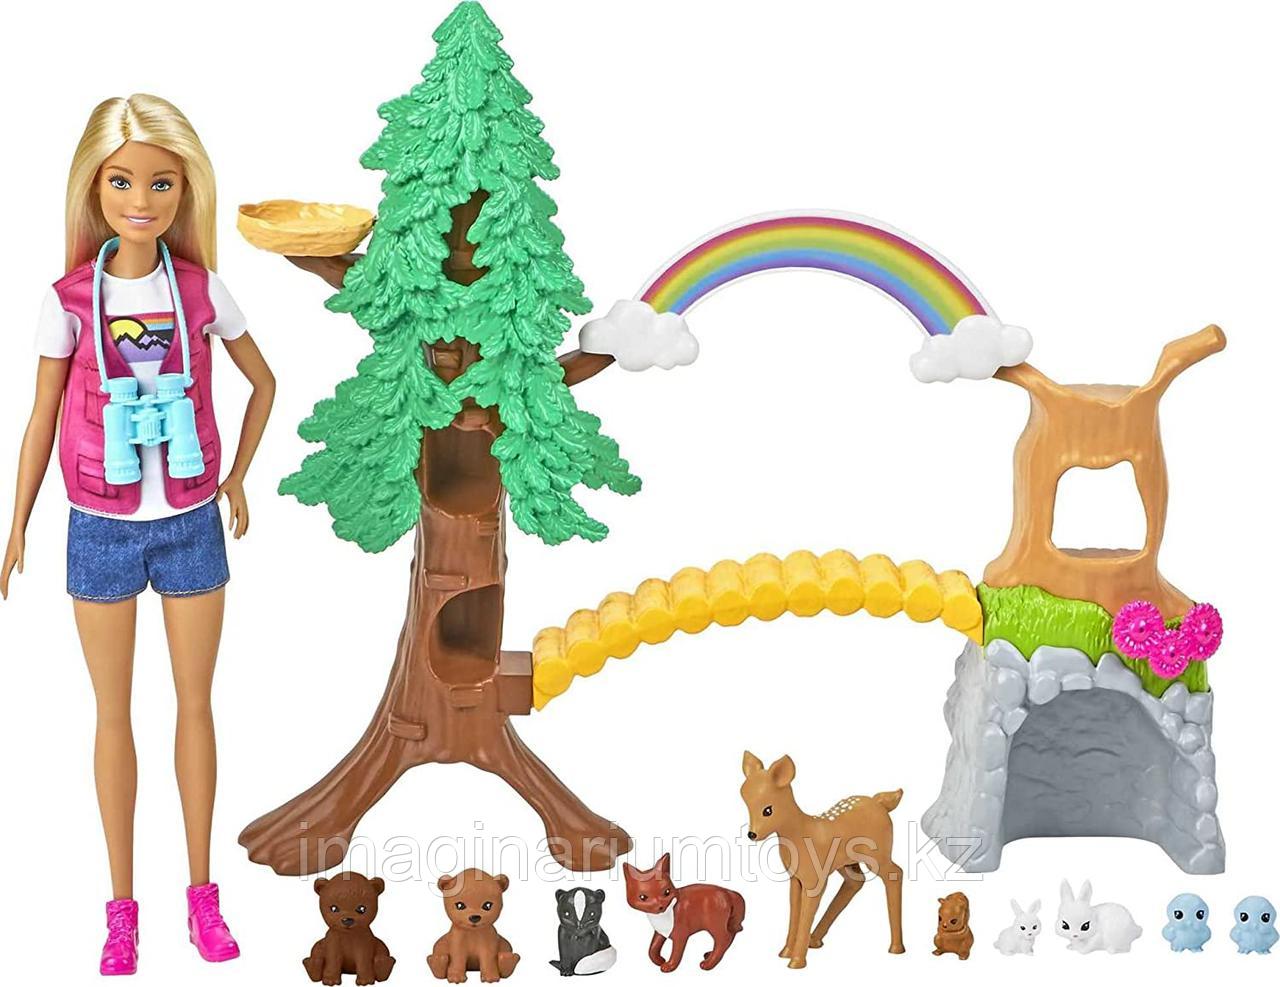 Barbie Игровой набор Барби с лесными животными, фото 1